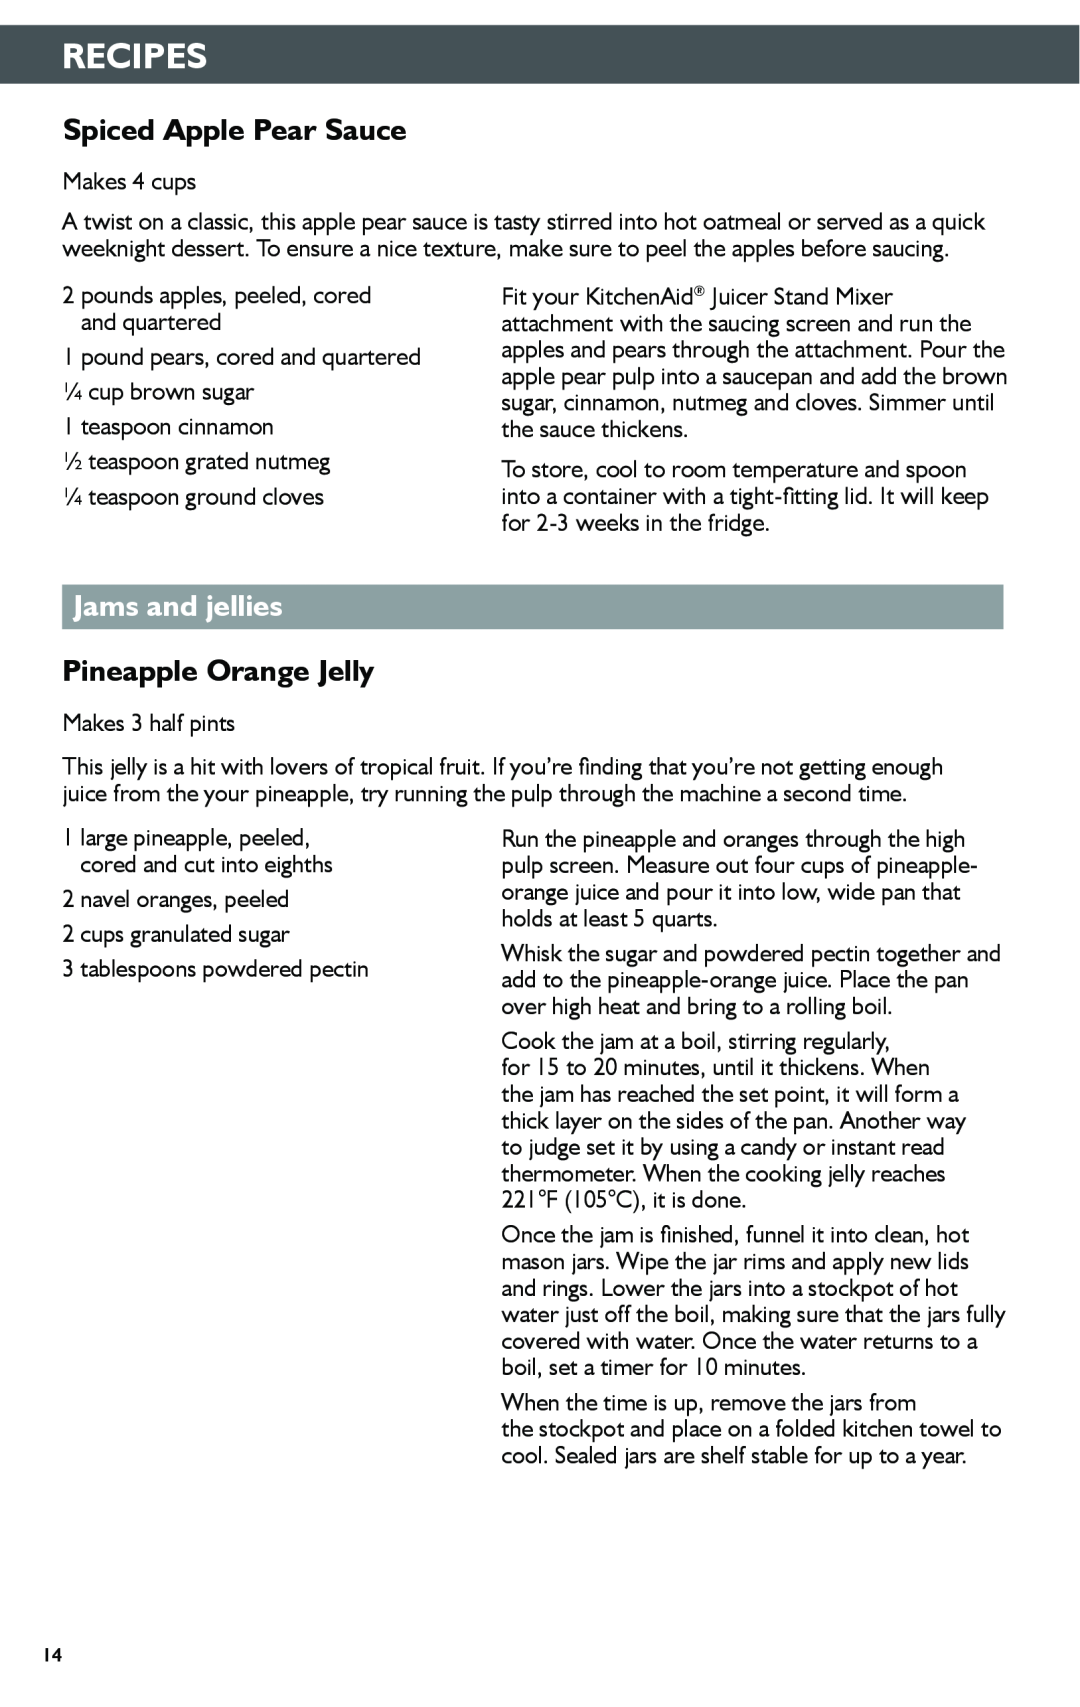 KitchenAid KSN1JA manual Spiced Apple Pear Sauce, Jams and jellies, Pineapple Orange Jelly, Recipes 